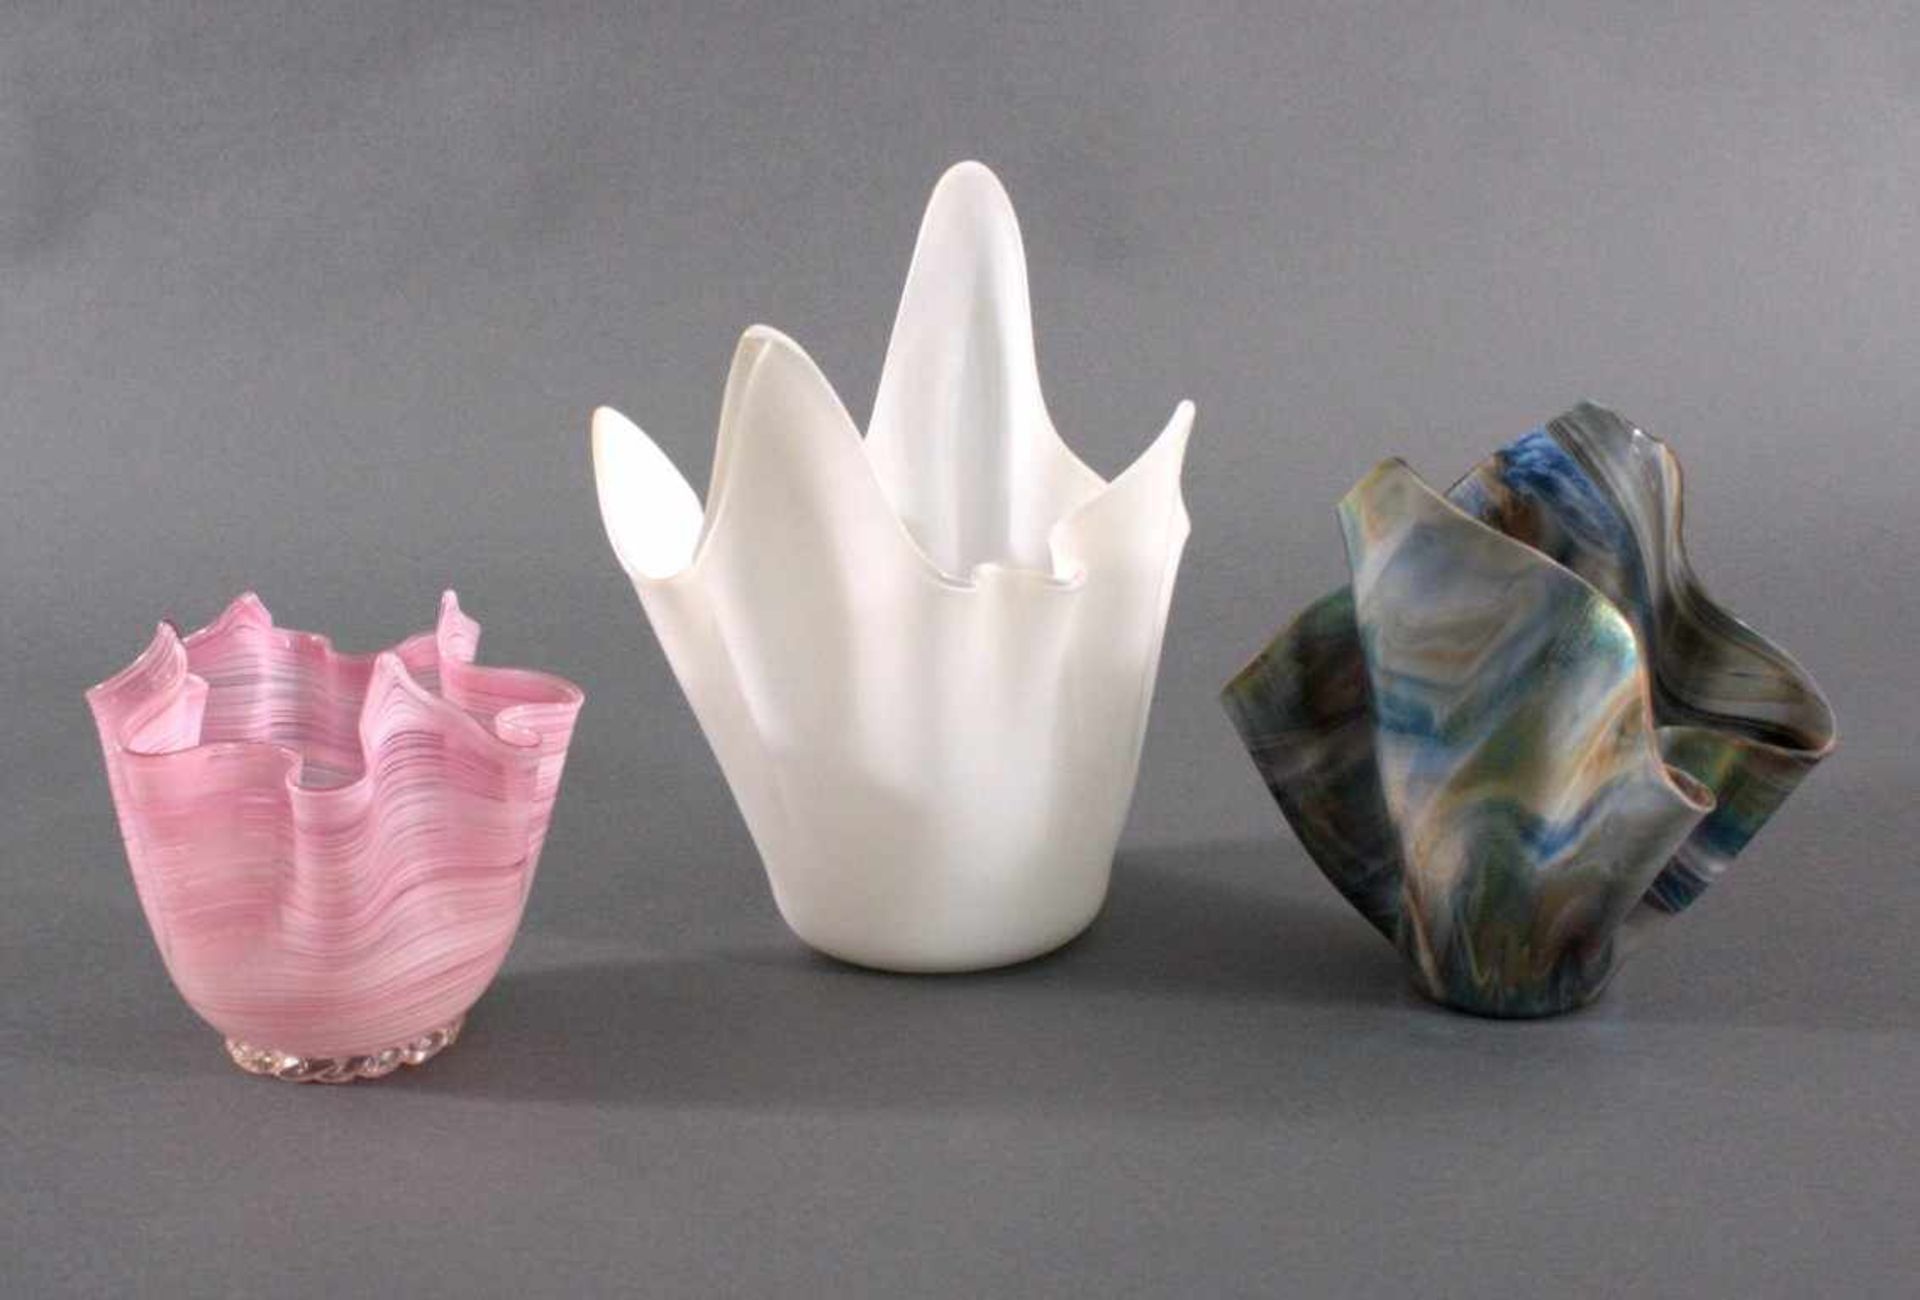 Drei Taschentuchvasen, Murano, Venini 20. Jh.Fazzoletto Vasen. Mehrfach gefaltete und spitz